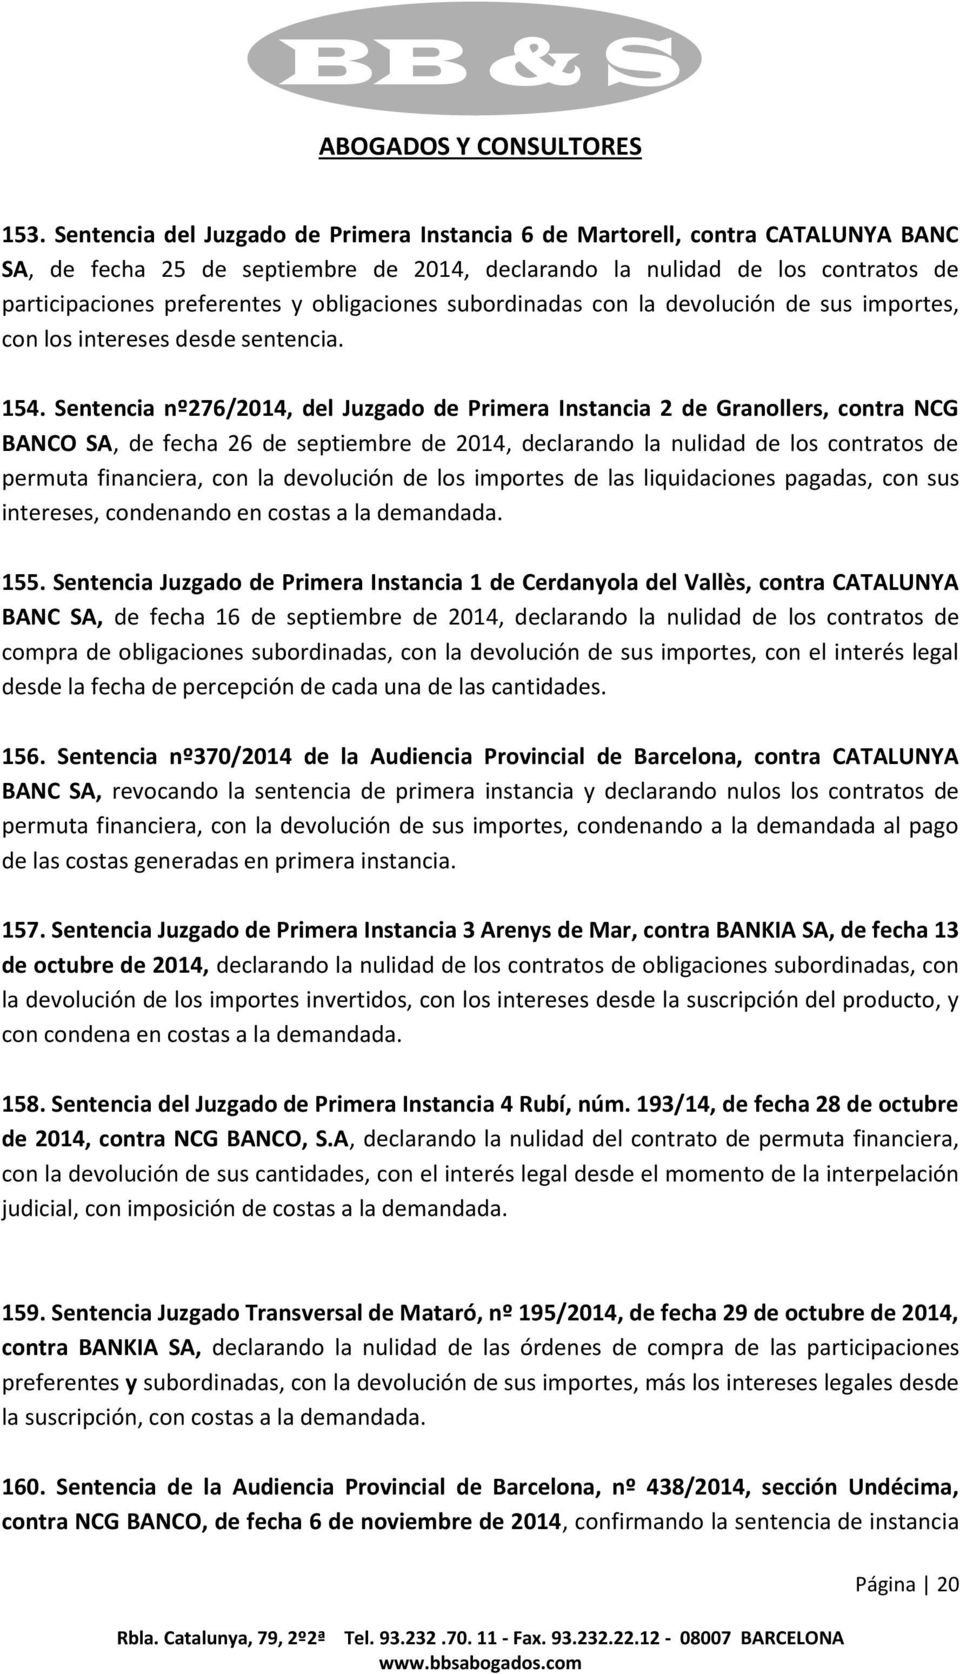 Sentencia nº276/2014, del Juzgado de Primera Instancia 2 de Granollers, contra NCG BANCO SA, de fecha 26 de septiembre de 2014, declarando la nulidad de los contratos de permuta financiera, con la